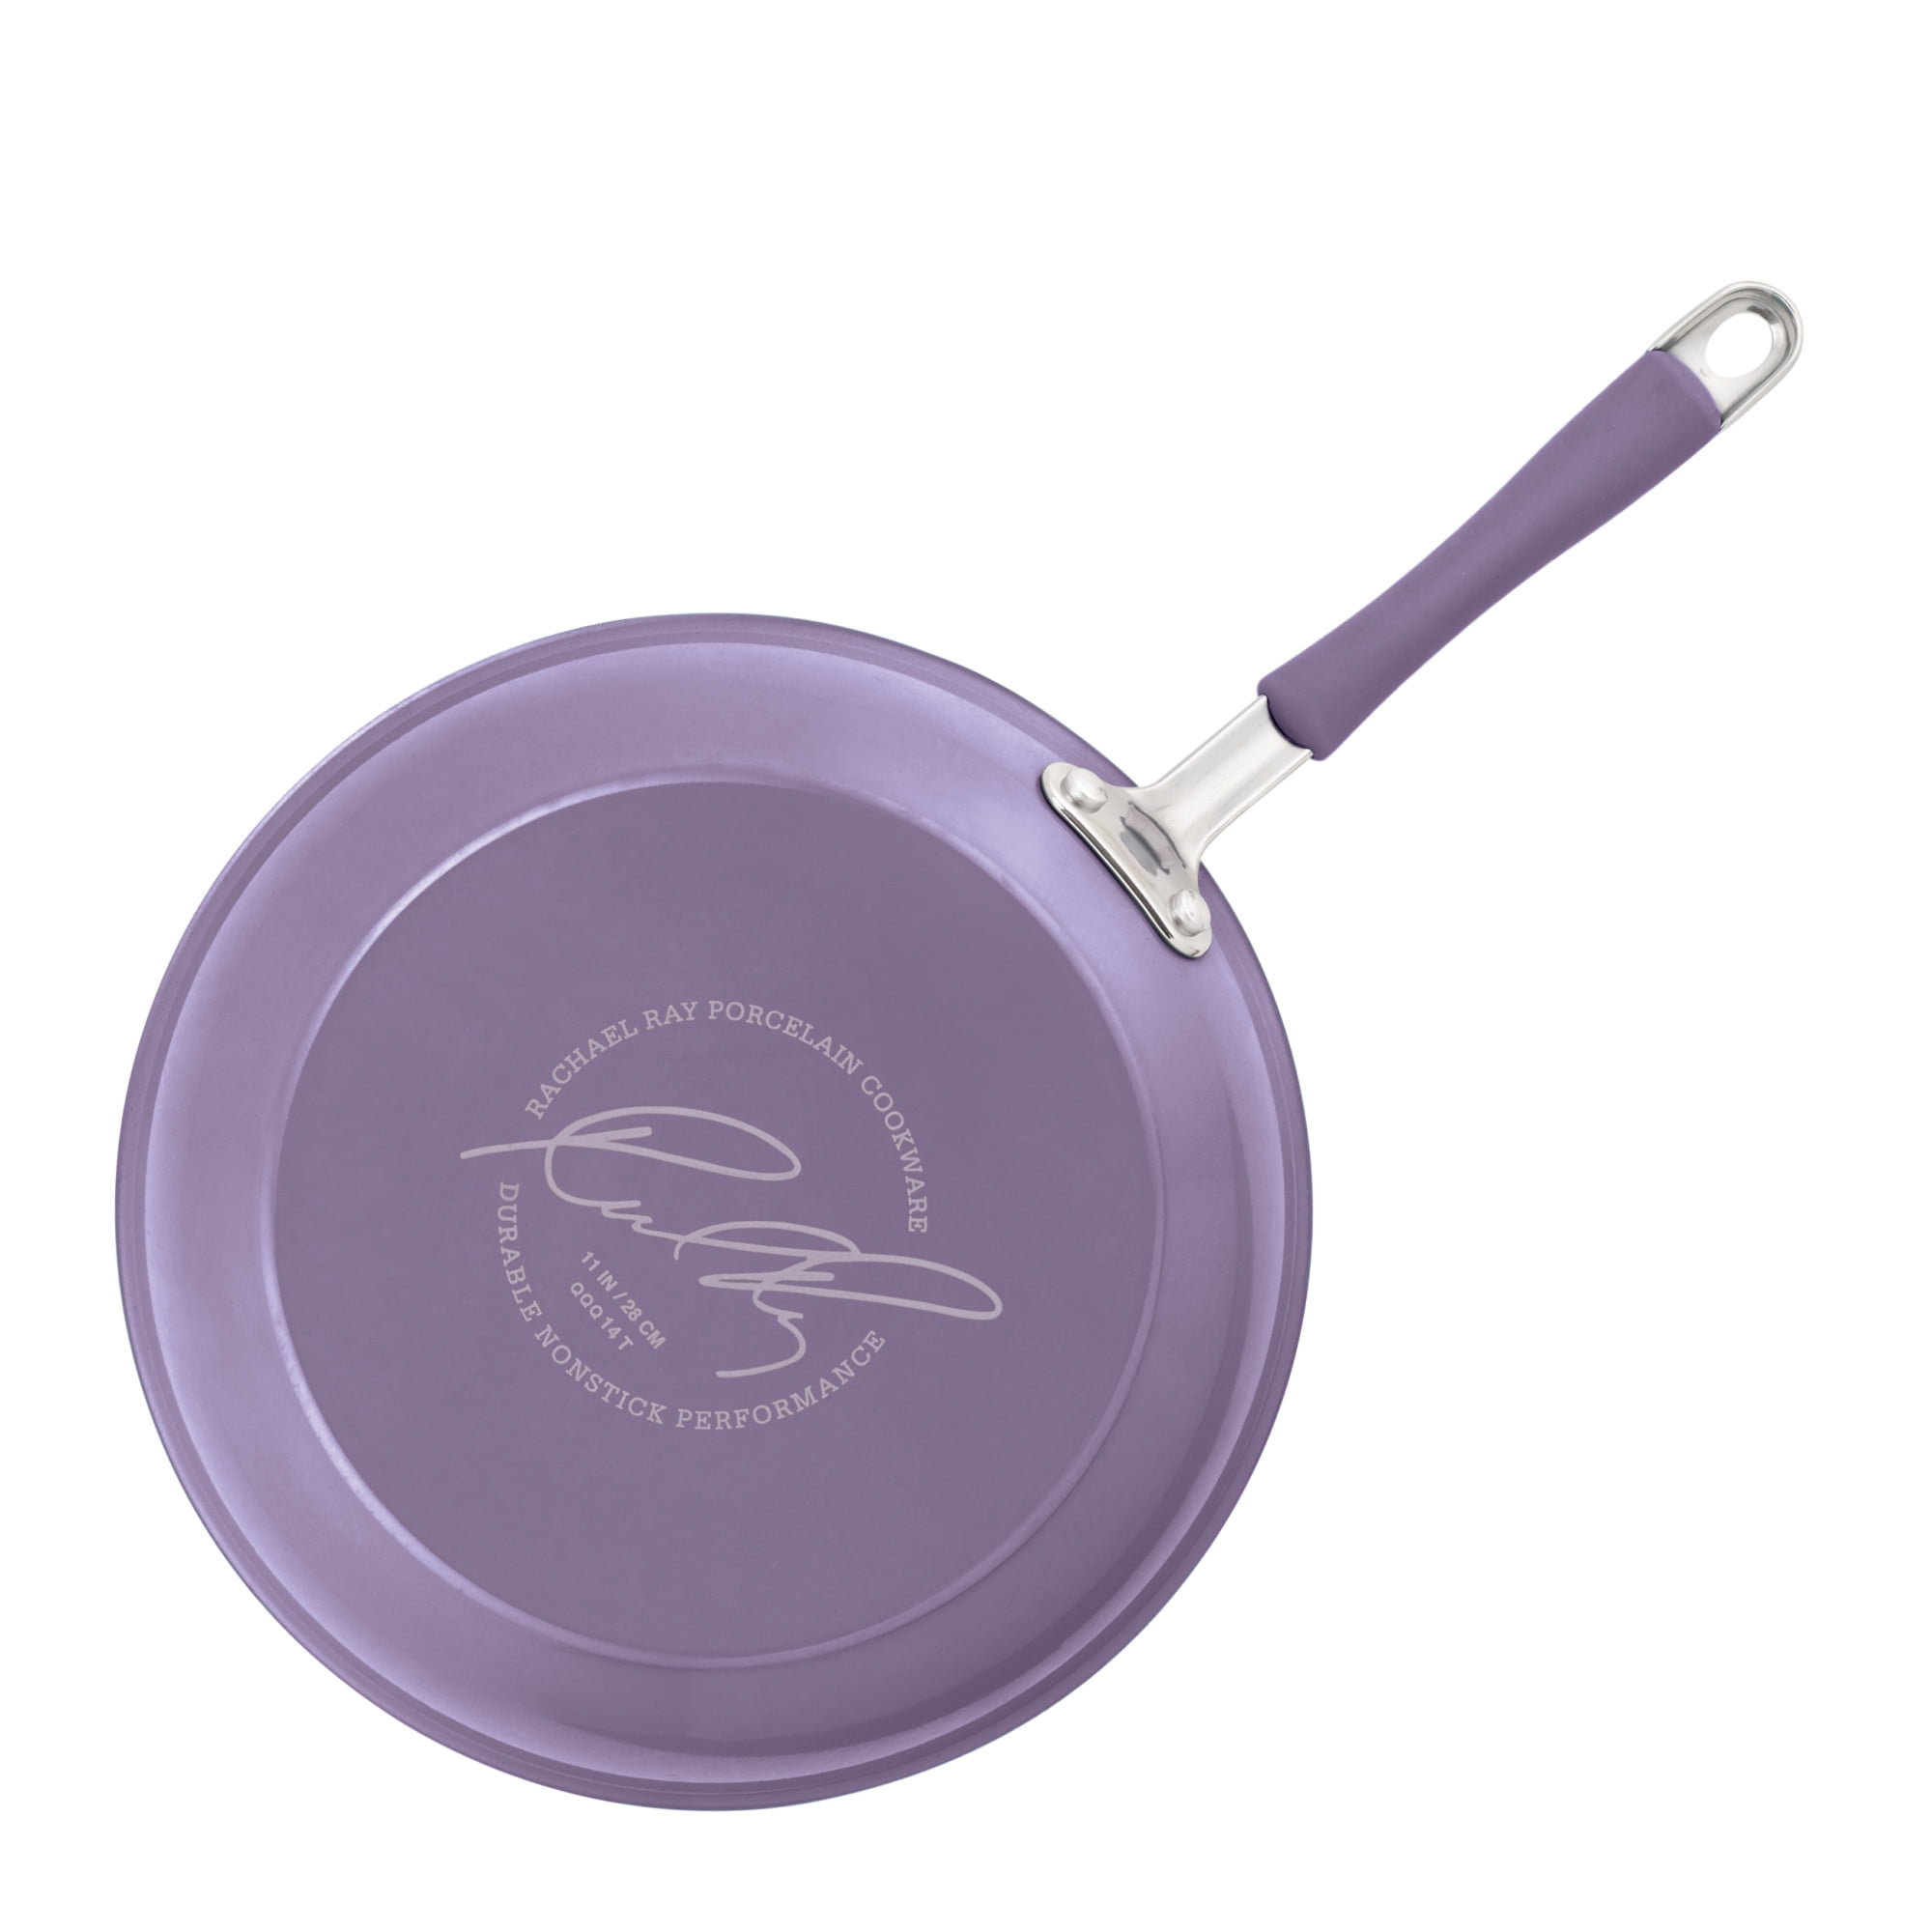 Caraway - Oh la la, Lavender. Our newest Cookware Set